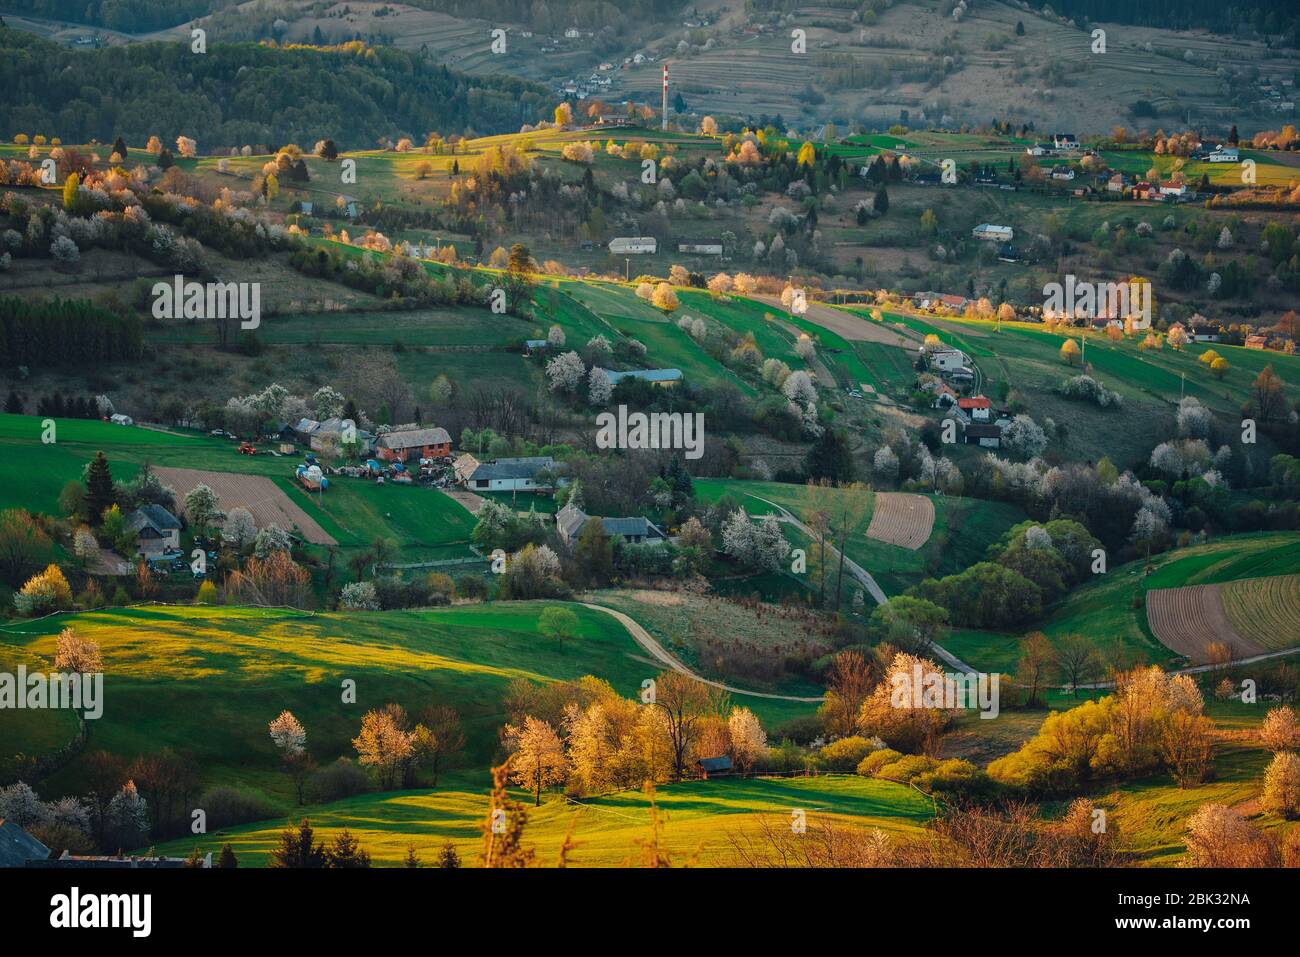 Alba primaverile in un paesaggio rurale con ciliegie fiorite, campi verdi e piccole case. I primi raggi del sole nel villaggio Hrinov Foto Stock